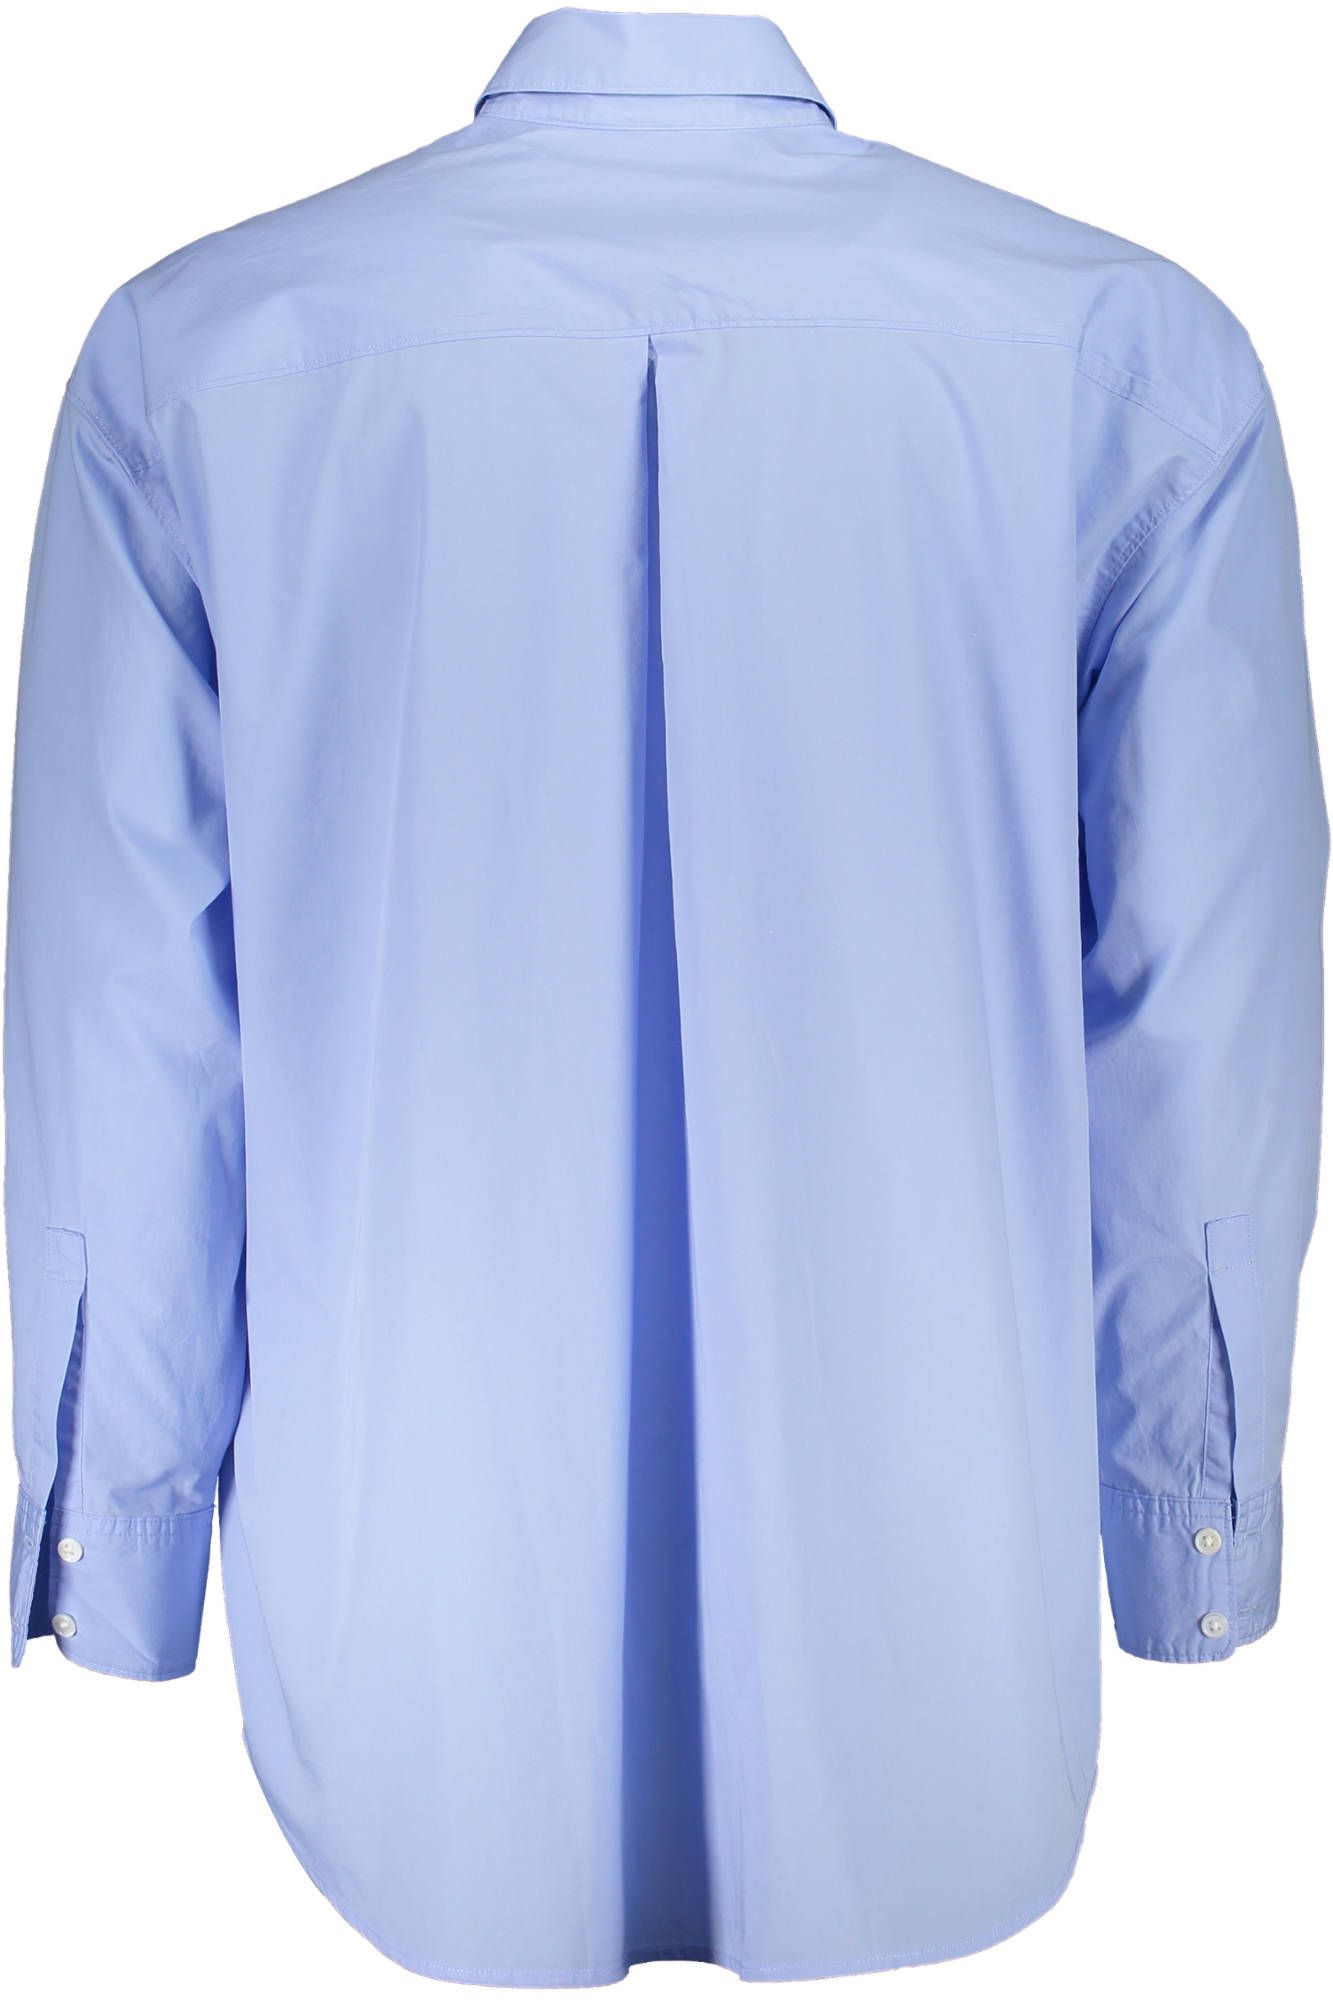 Levi's Elegant Light Blue Long-Sleeved Shirt